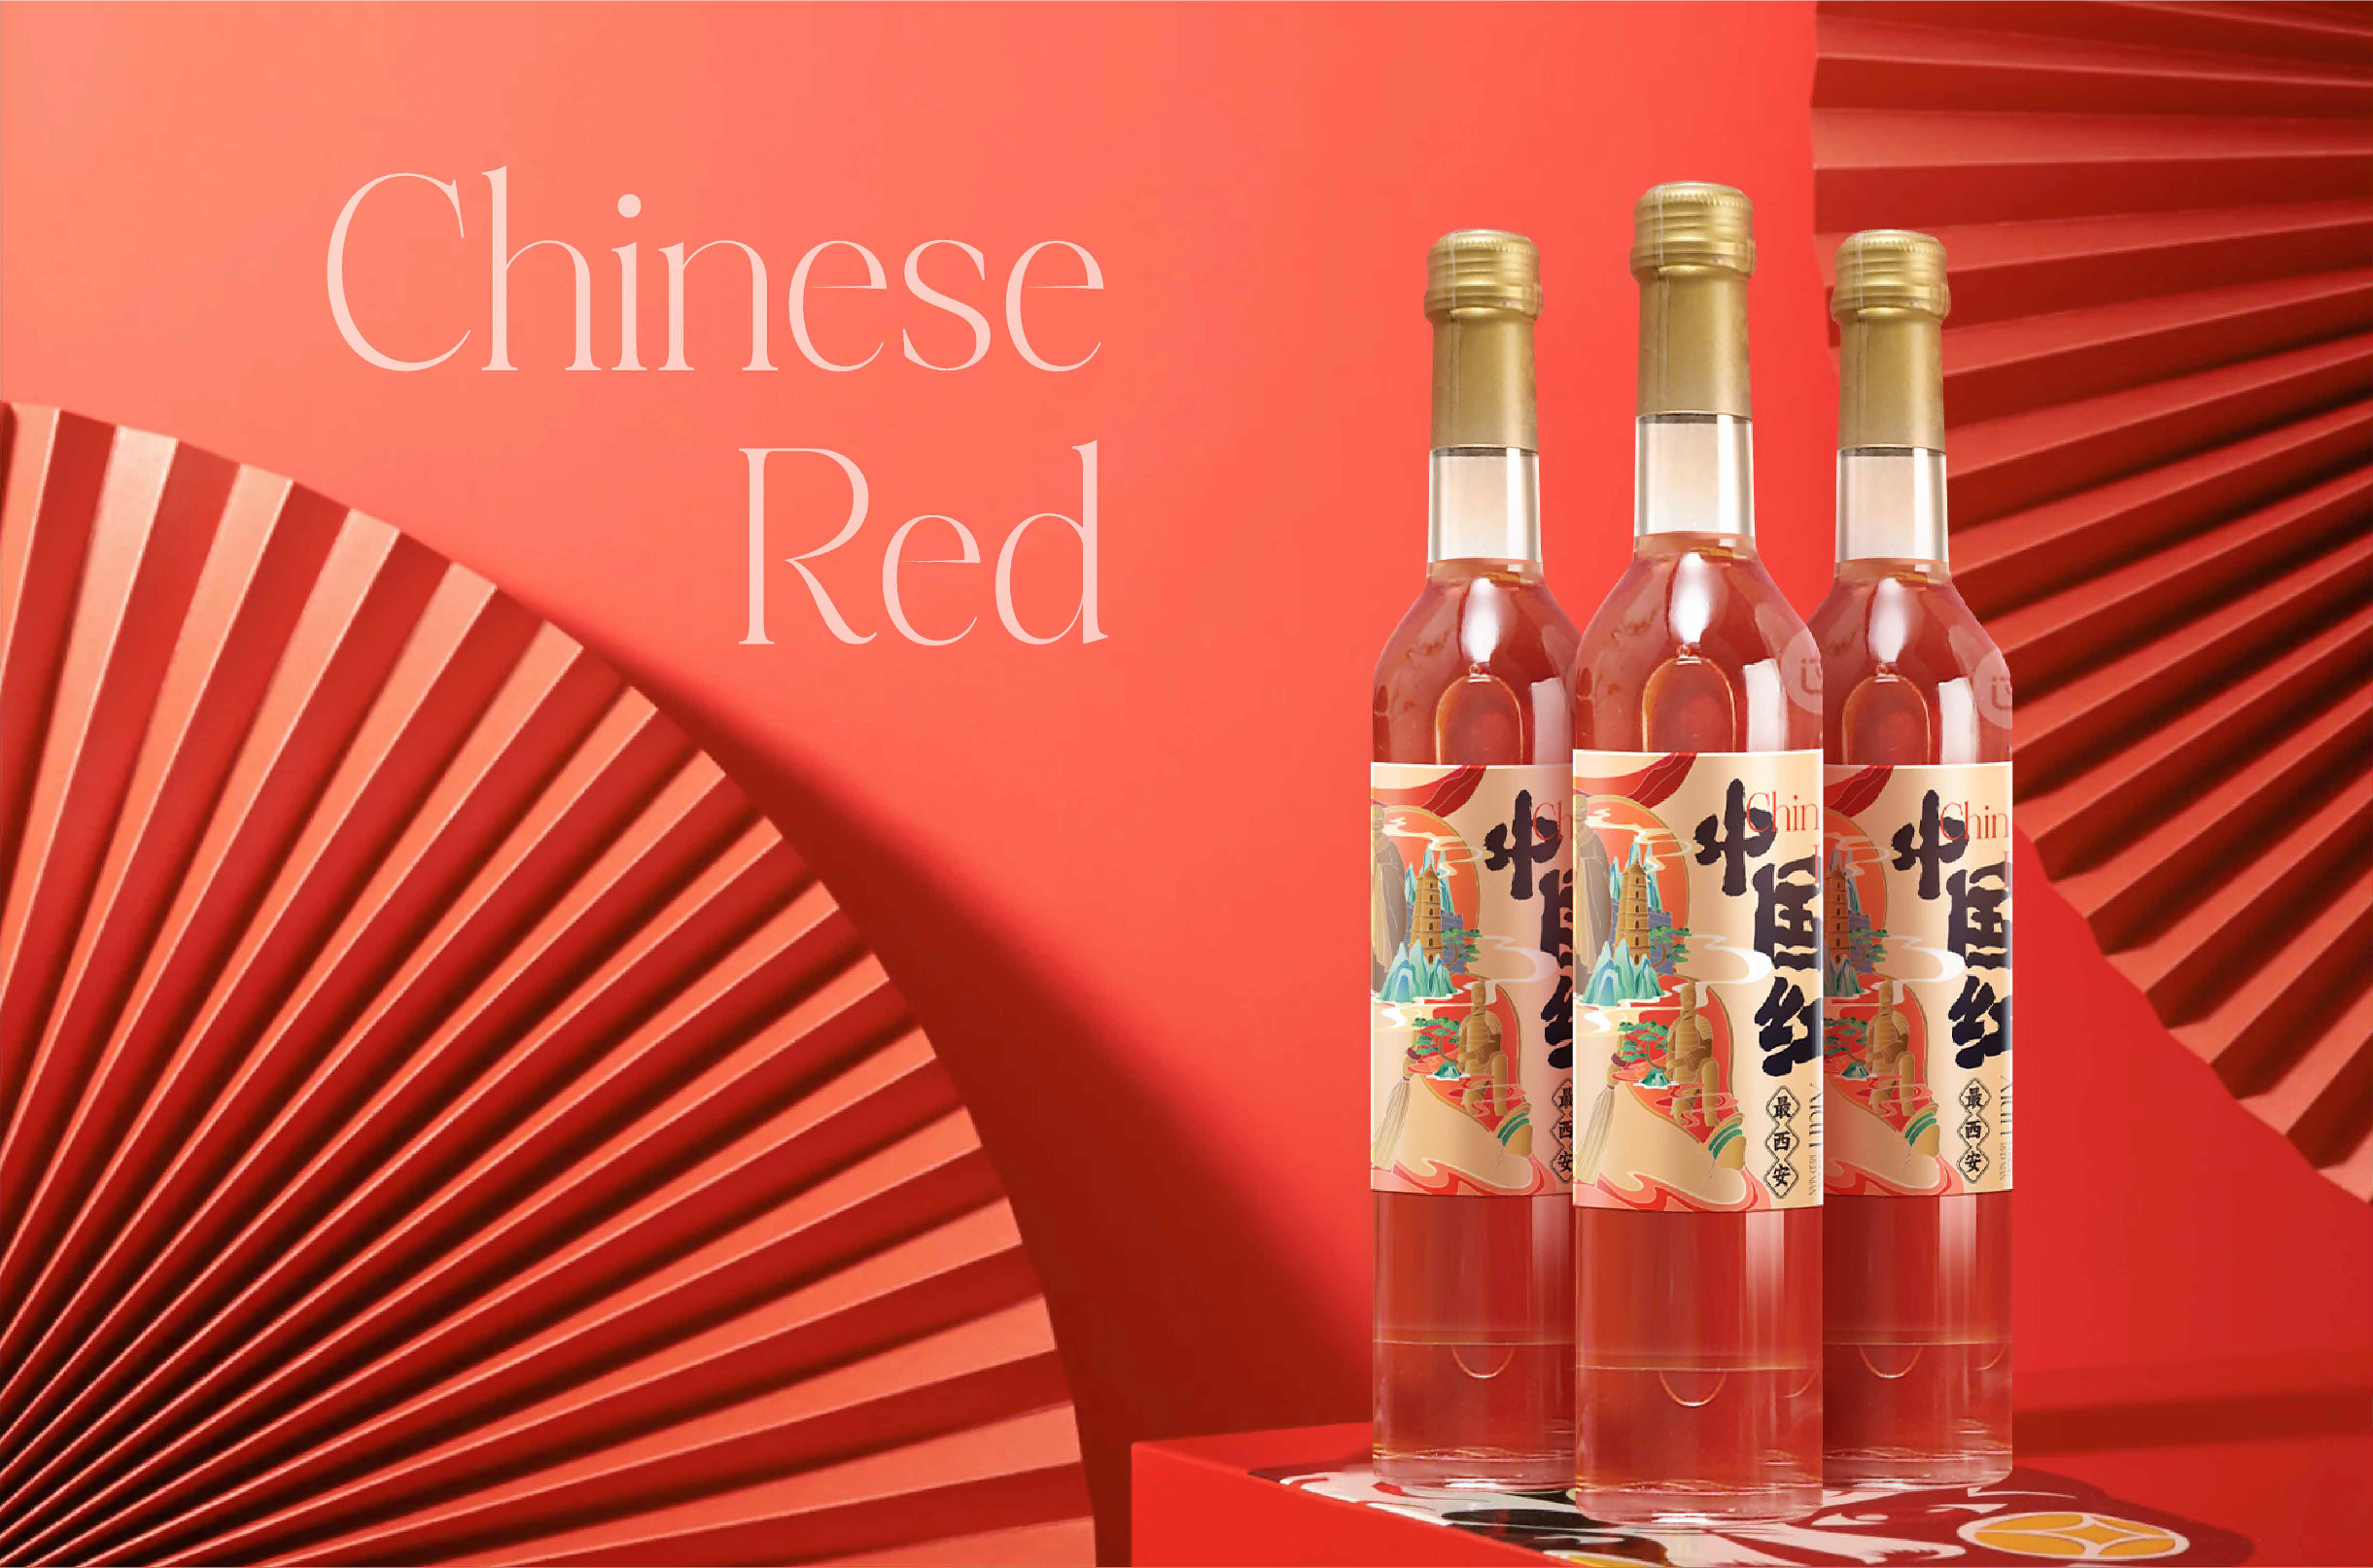 中国红最西安葡萄酒包装设计插画瓶贴设计